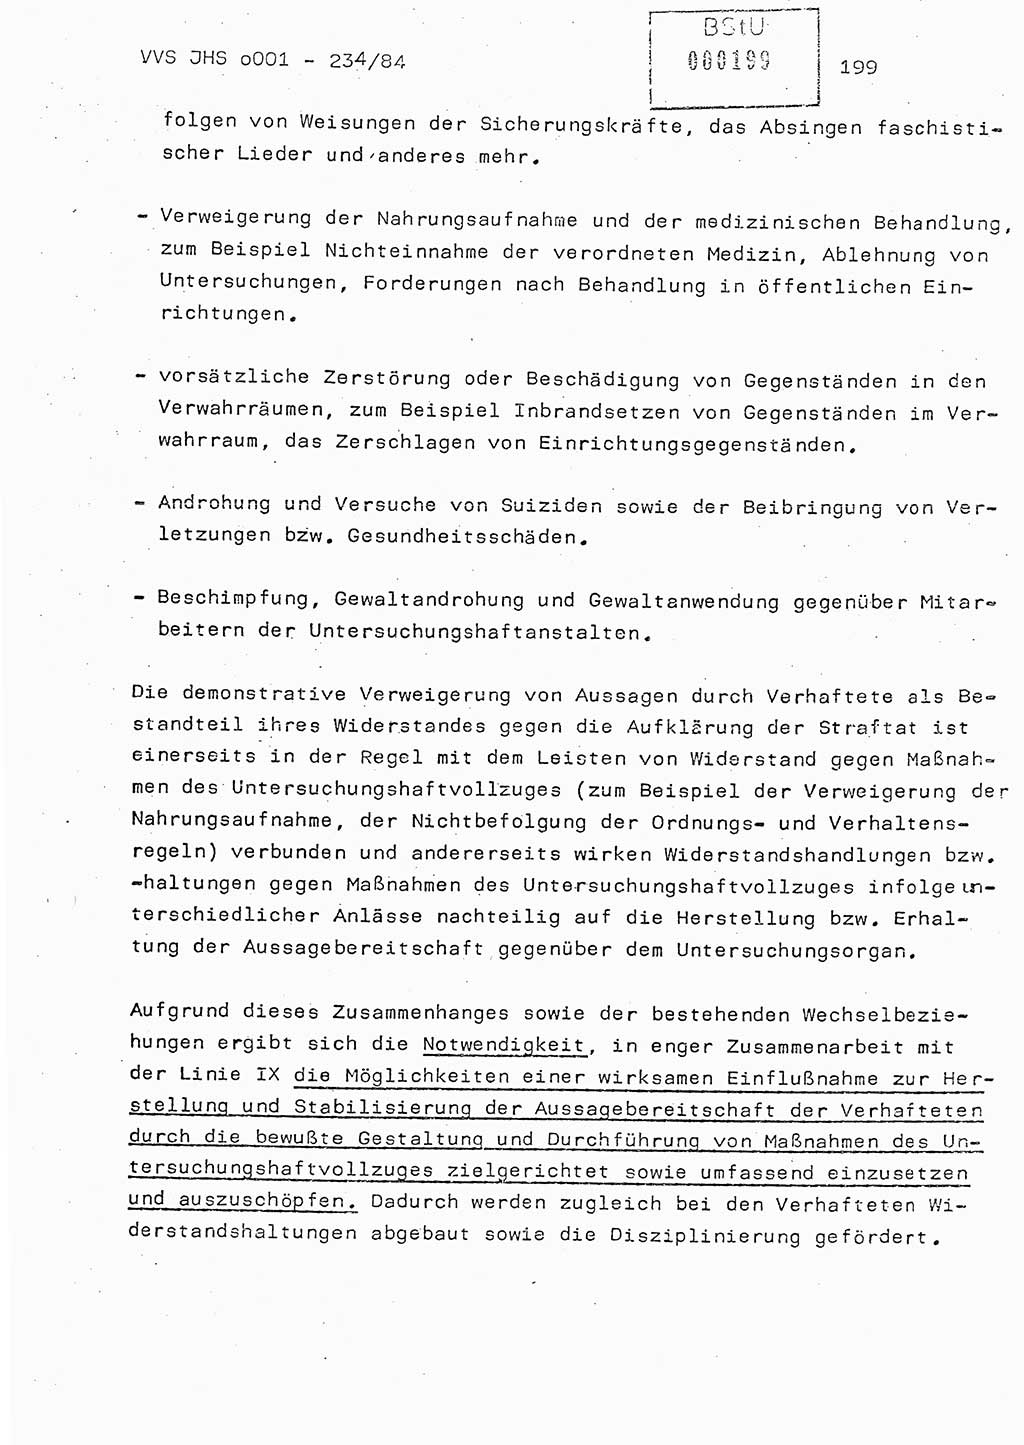 Dissertation Oberst Siegfried Rataizick (Abt. ⅩⅣ), Oberstleutnant Volkmar Heinz (Abt. ⅩⅣ), Oberstleutnant Werner Stein (HA Ⅸ), Hauptmann Heinz Conrad (JHS), Ministerium für Staatssicherheit (MfS) [Deutsche Demokratische Republik (DDR)], Juristische Hochschule (JHS), Vertrauliche Verschlußsache (VVS) o001-234/84, Potsdam 1984, Seite 199 (Diss. MfS DDR JHS VVS o001-234/84 1984, S. 199)